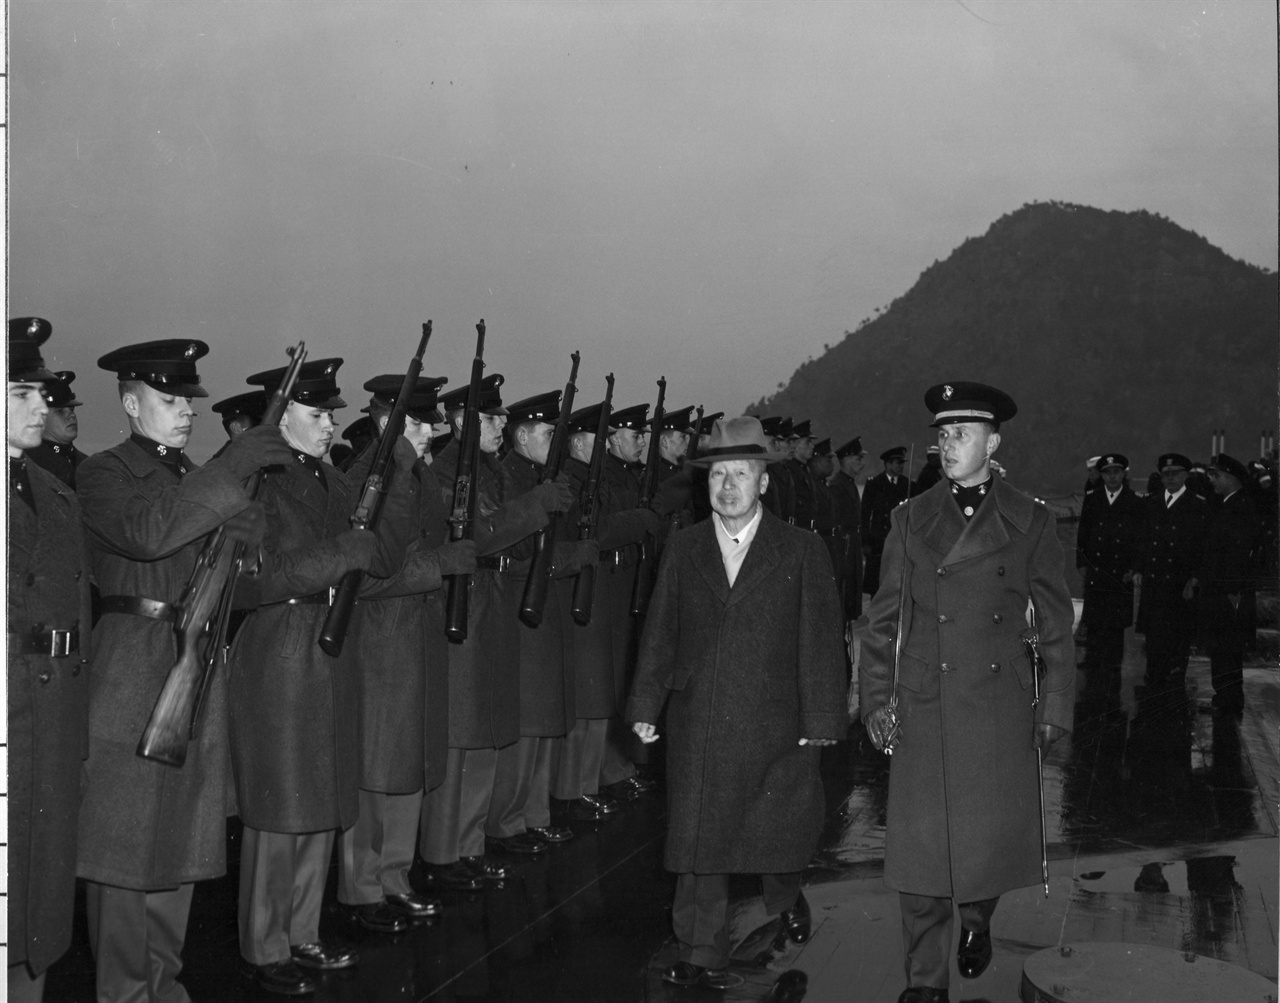 1952. 2. 12. 이승만 대통령이 부산 근해에 정박 중인 미 해군 Wisconsin 호 함상에서 미 해군 장병들의 사열을 하고 있다.